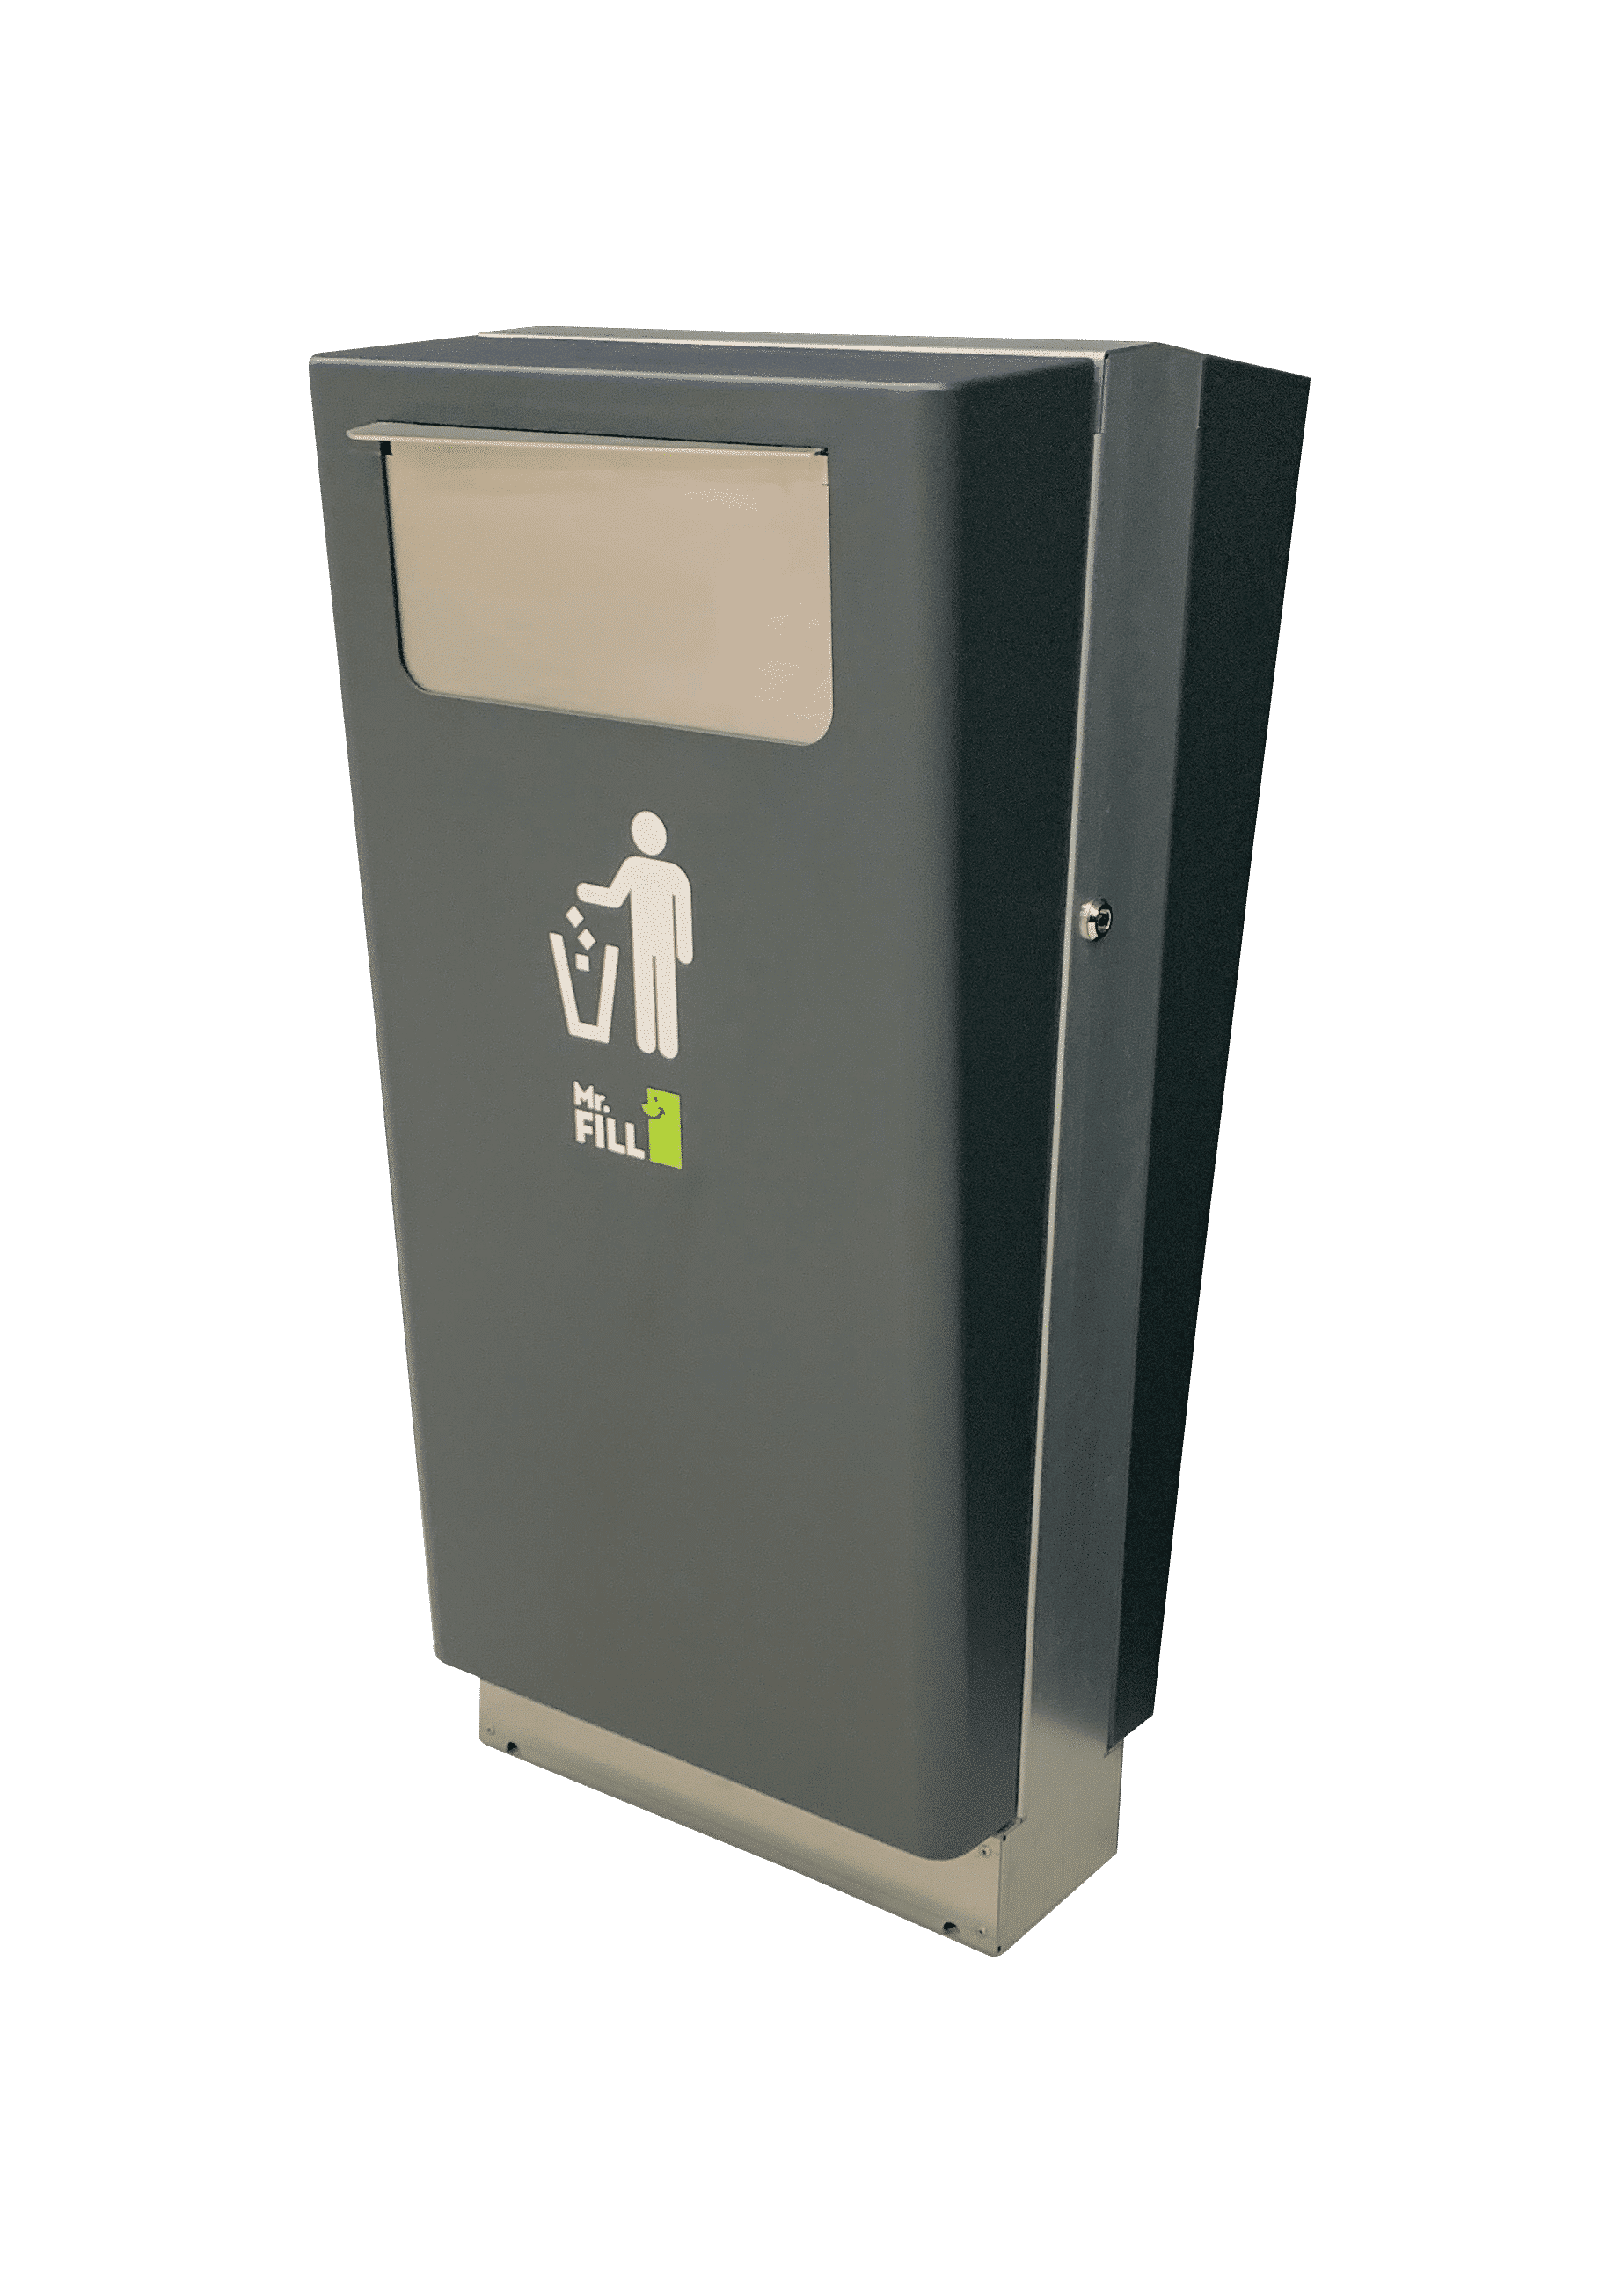 Smart bins – Mr-Fill